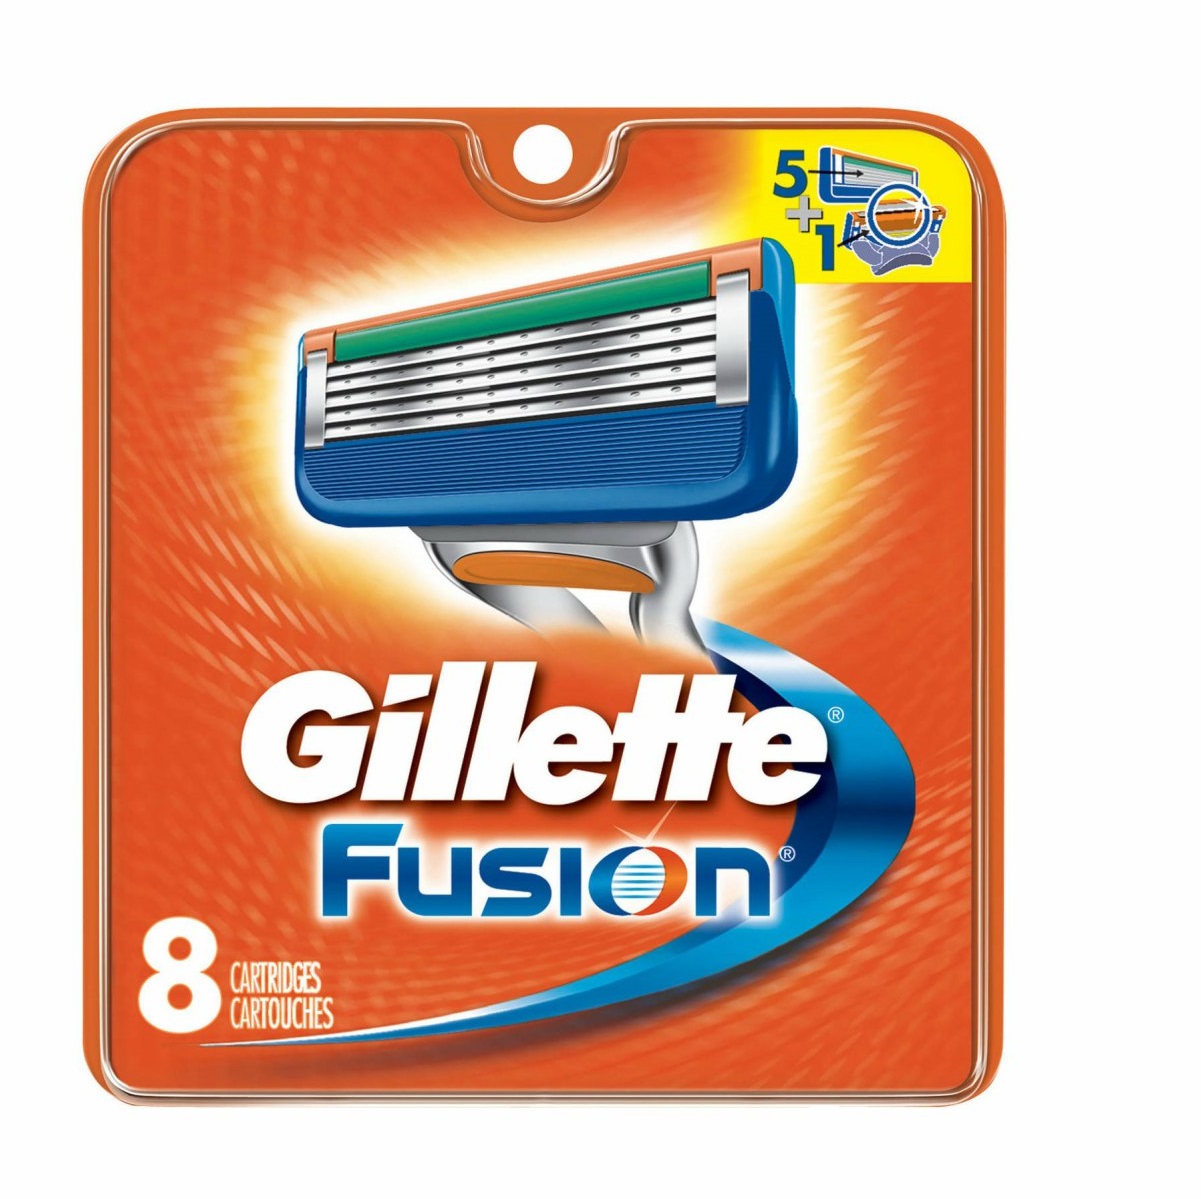 Сменные кассеты для станка Gillette Fusion 8шт сменные кассеты для бритв gillette fusion power для мужчин 4 шт